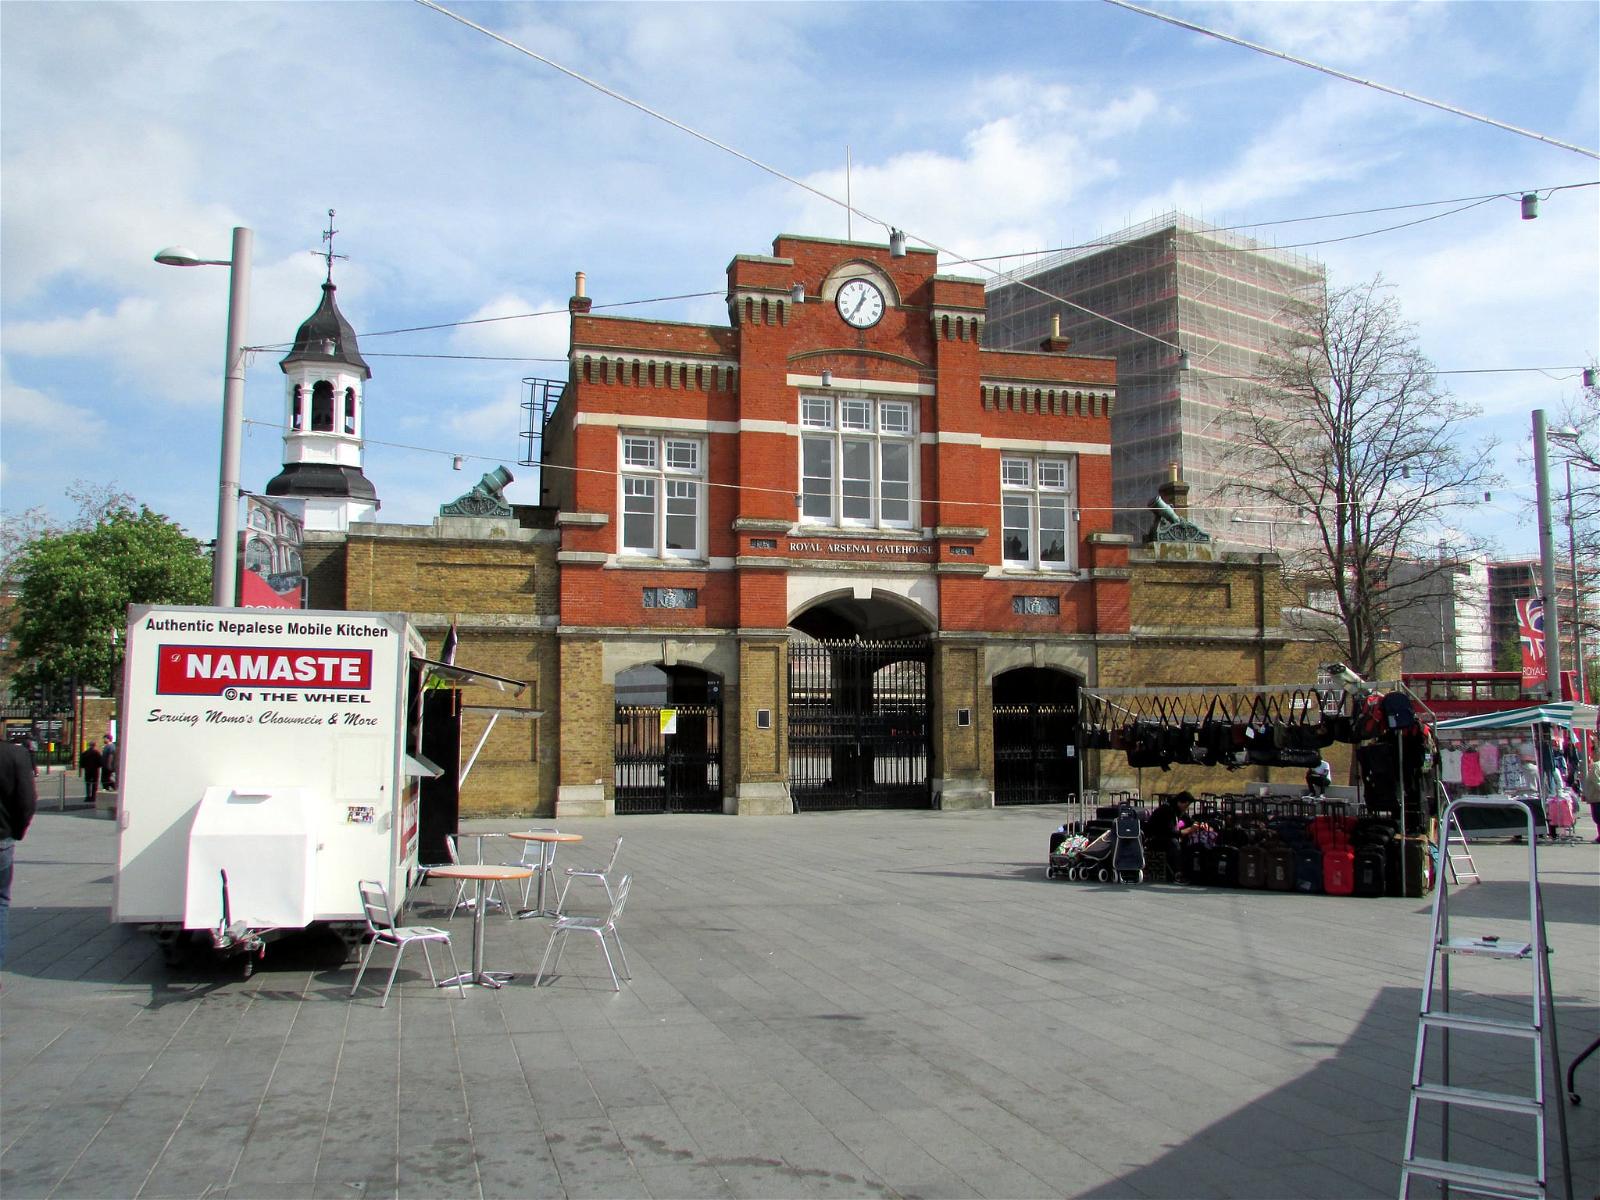 ภาพของ Royal Arsenal Gatehouse. london woolwich